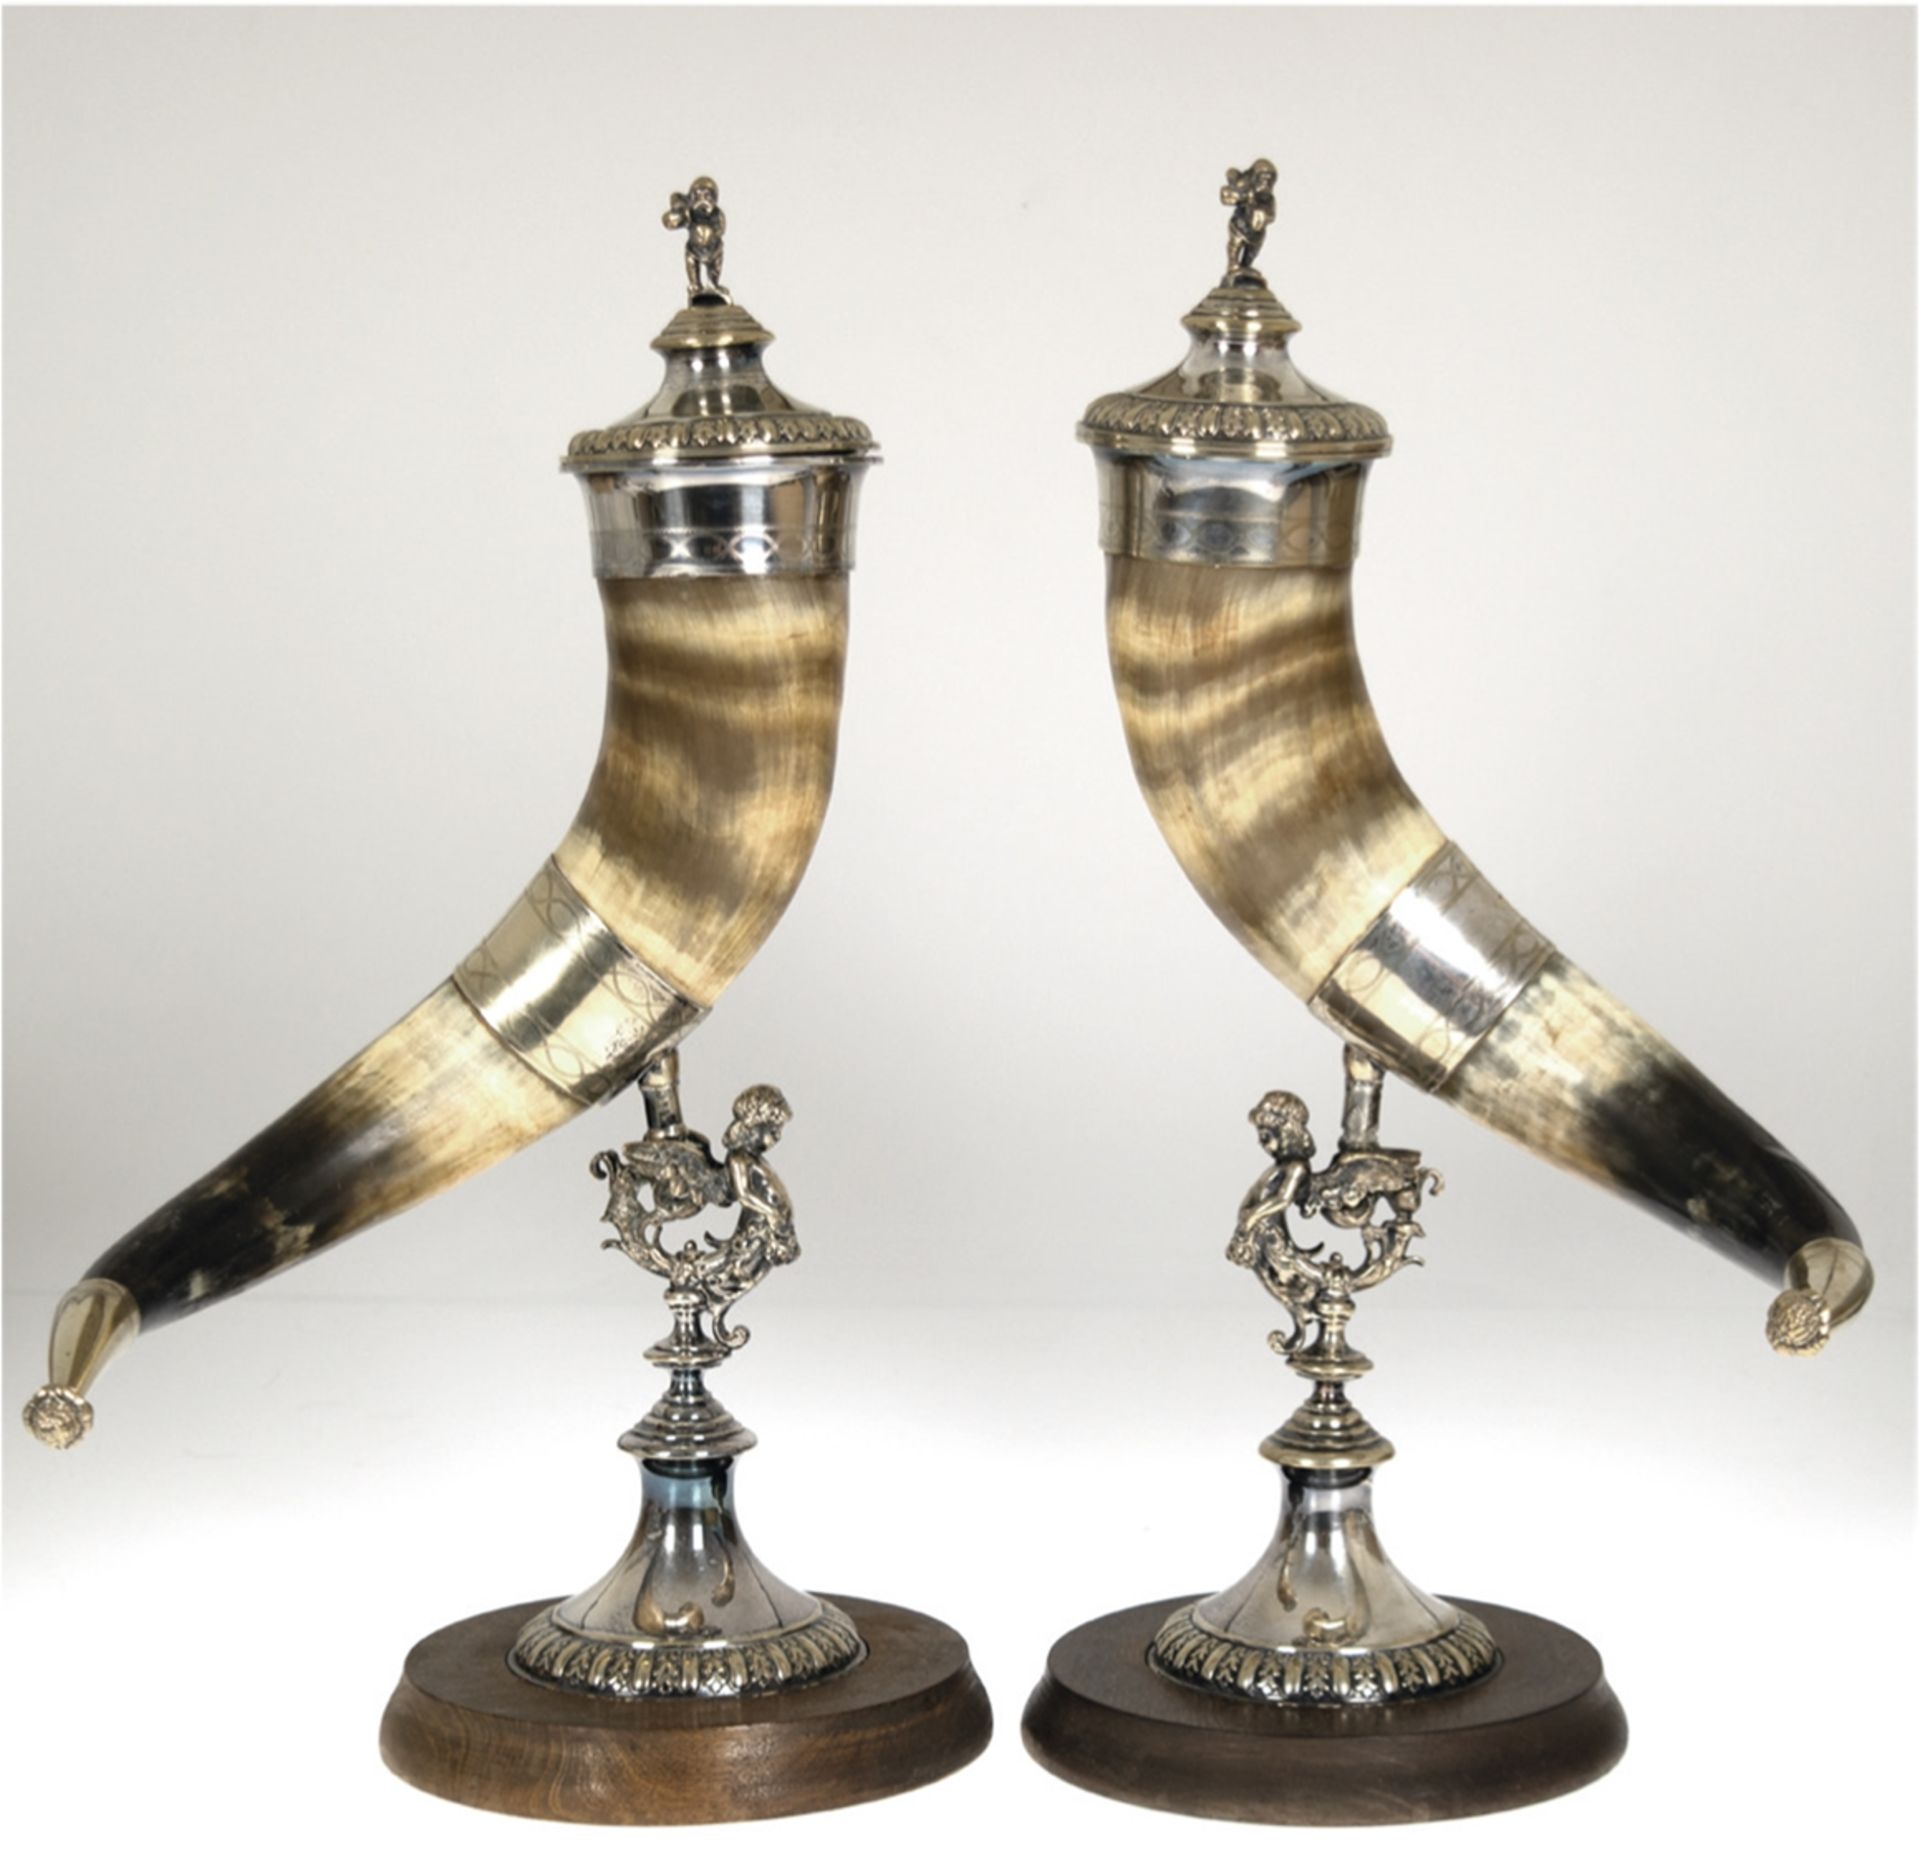 Paar Historismus-Trinkhörner auf figürlichem Fuß, versilbert, auf runder Holzplatte, Fuß mit plasti